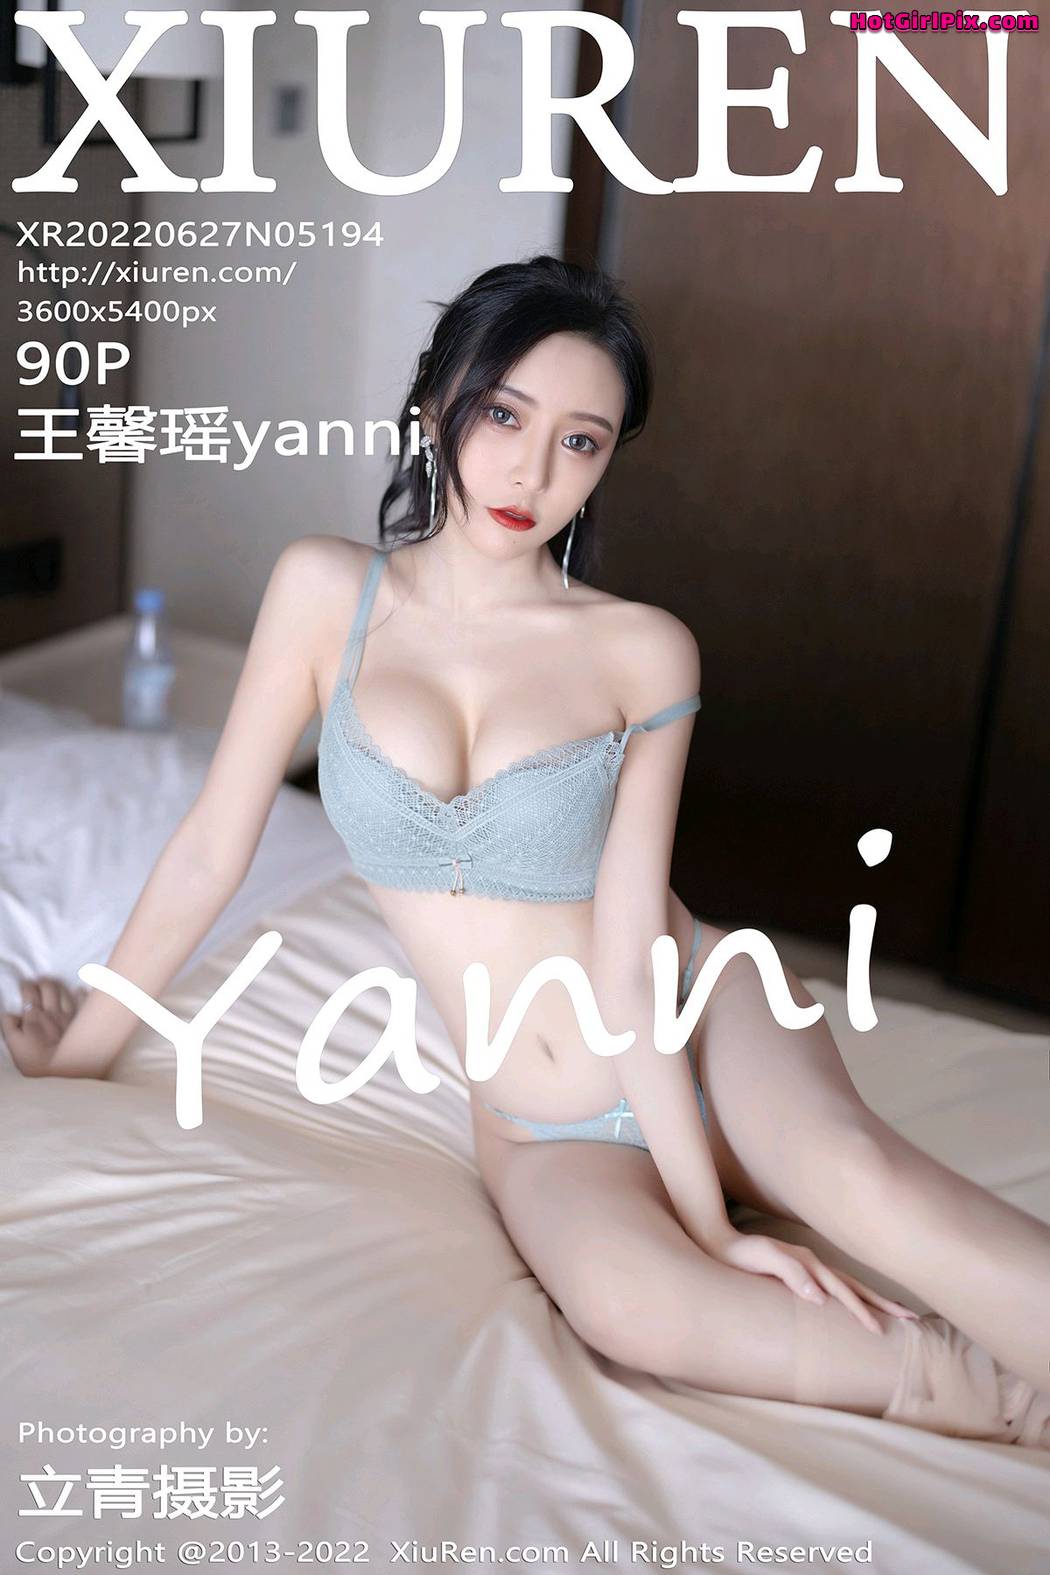 [XIUREN] No.5194 Wang Xin Yao 王馨瑶yanni Cover Photo